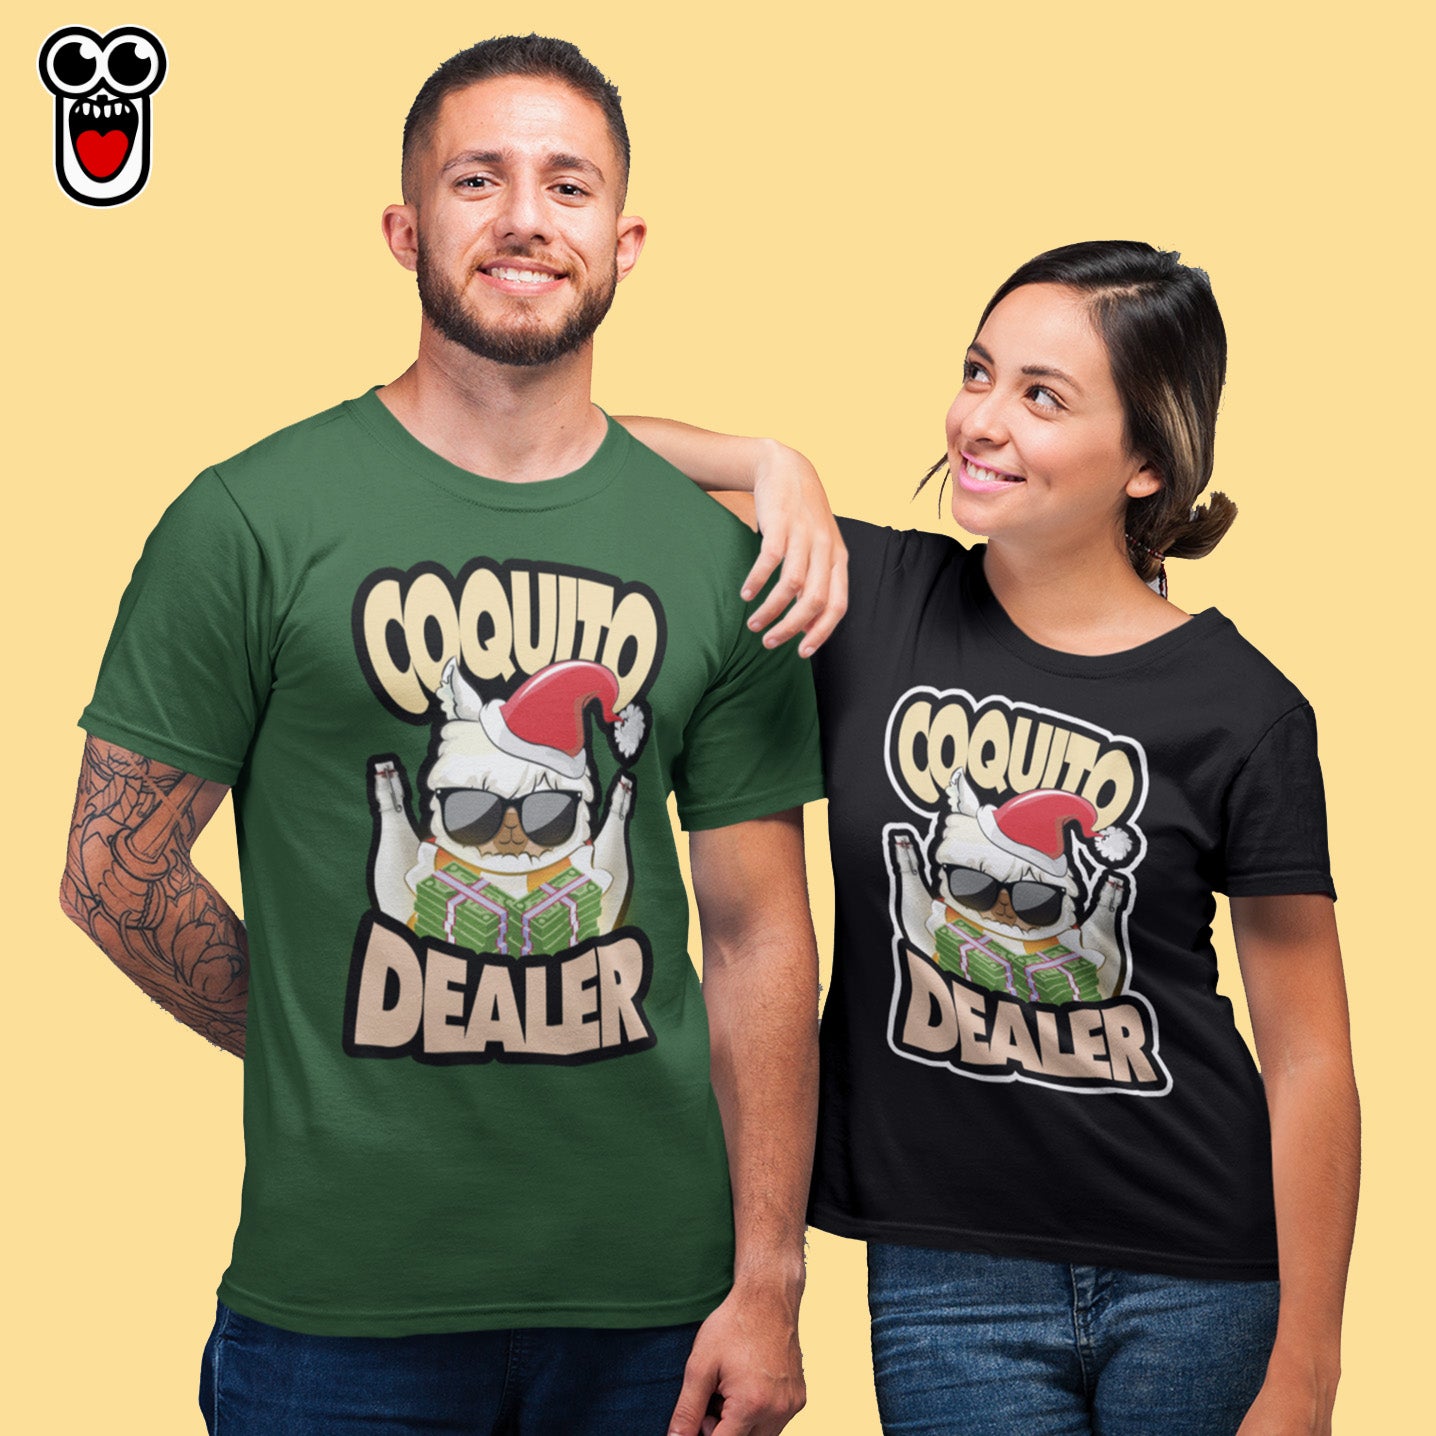 Cqto Dealer pocaverguenzapr Camisetas (4452640915546)